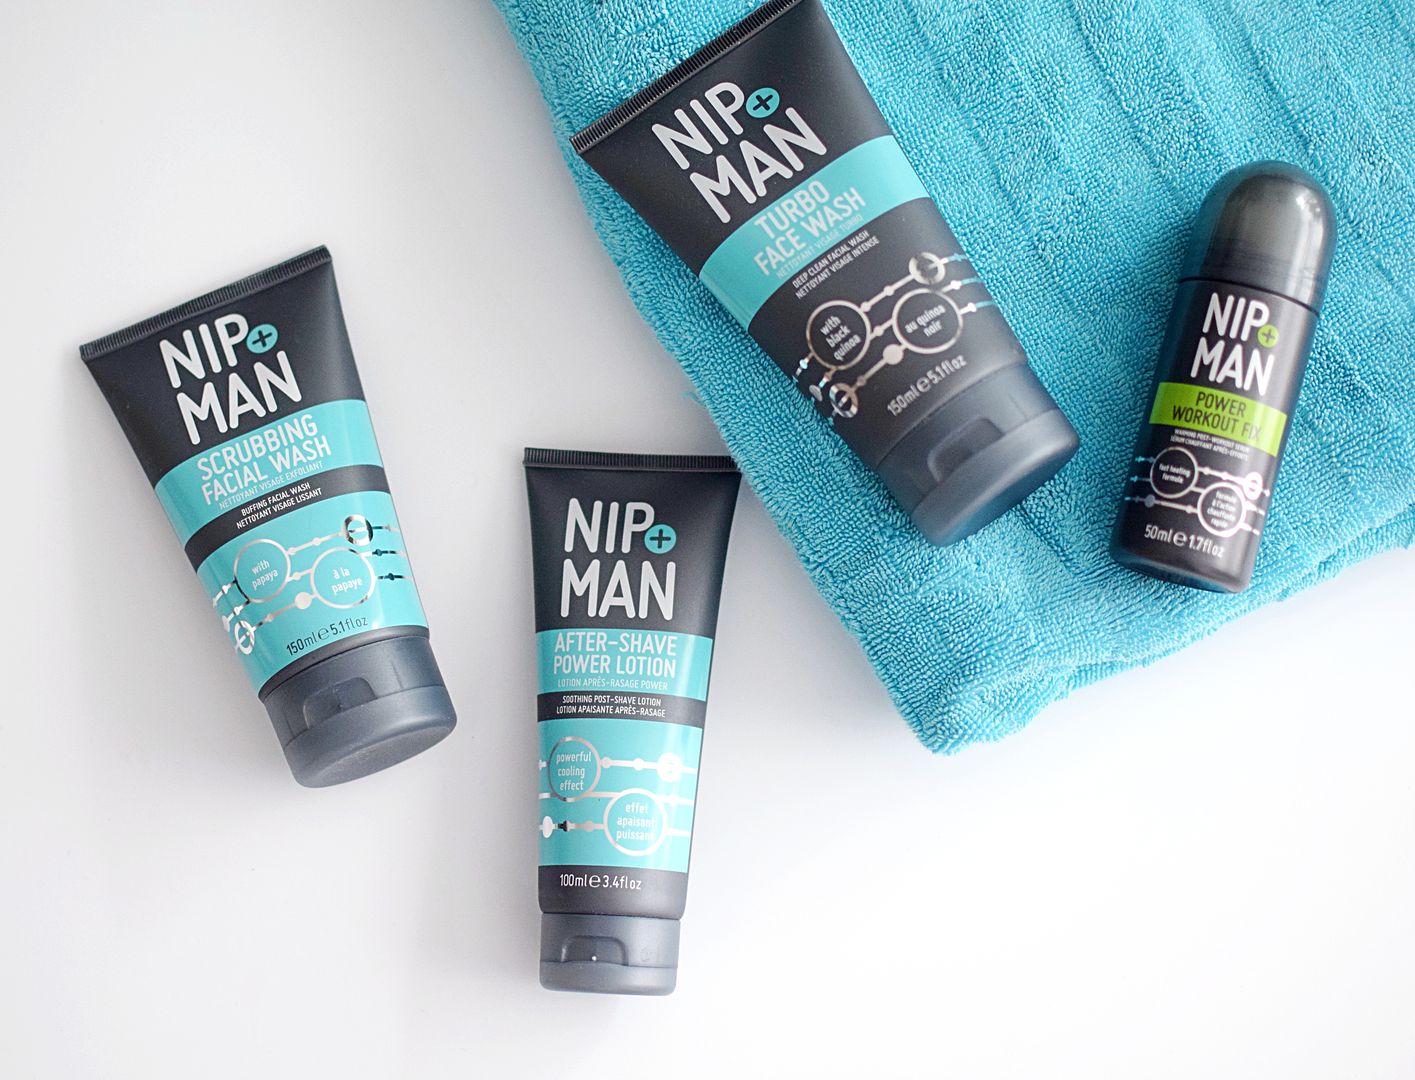 Nip & Man mens grooming range review